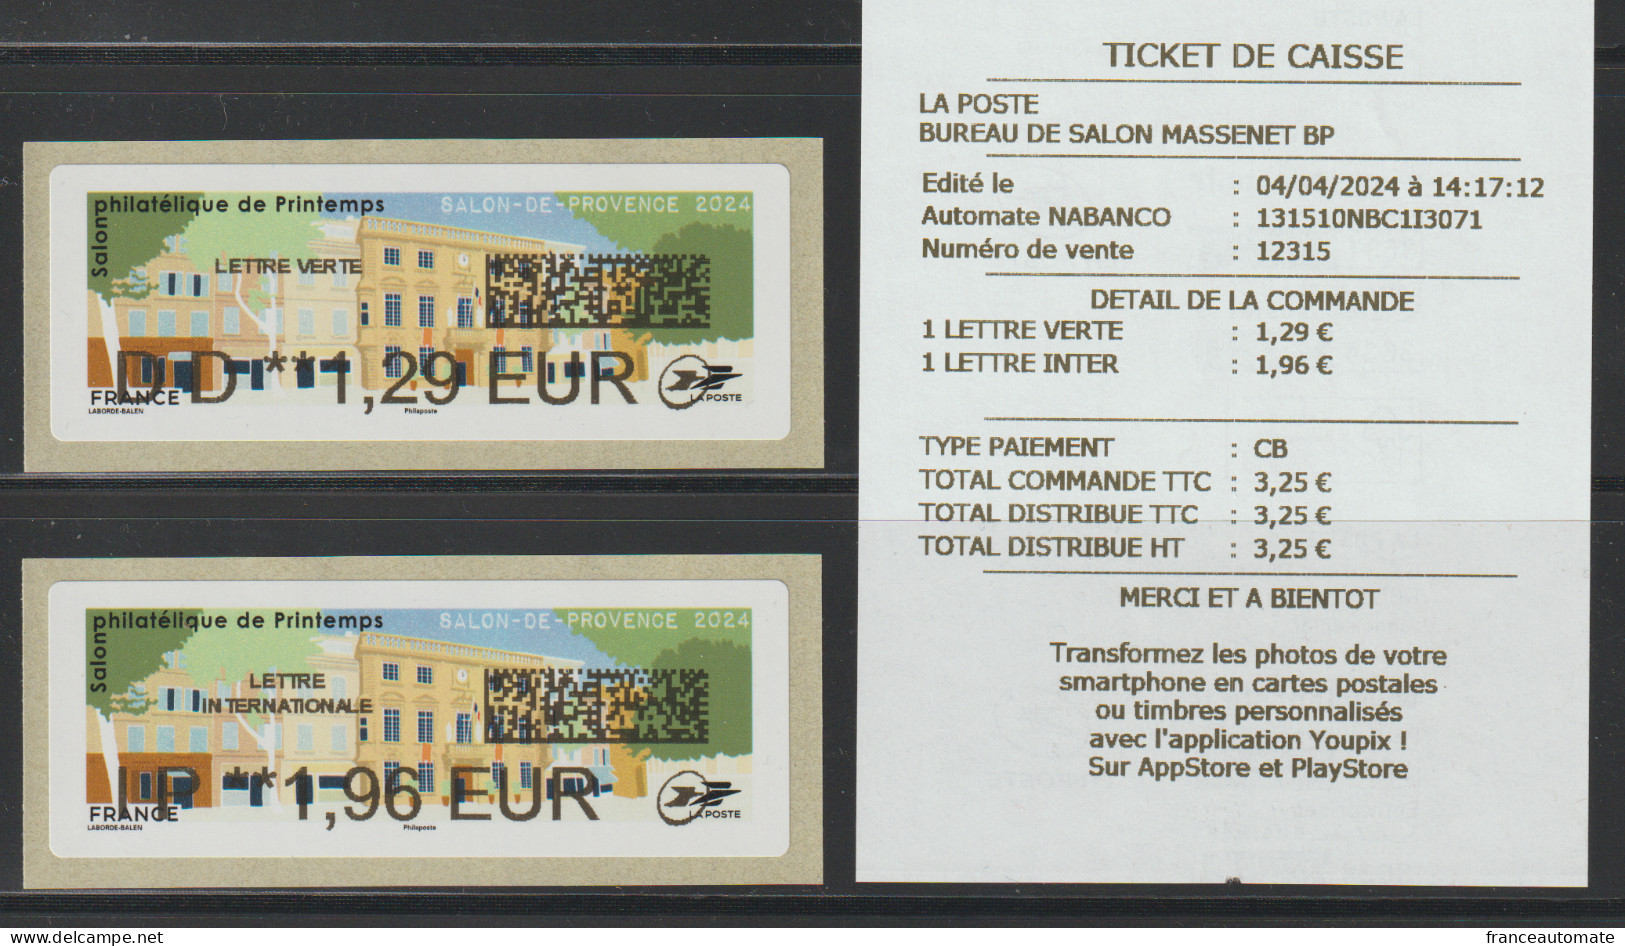 2 Atms, NABANCO, LETTRE VERTE DD 1.29 Et INTER. IP 1.96€. Hôtel De Ville, Salon De Provence, 4 04 24, Salon De Printemps - 2010-... Illustrated Franking Labels